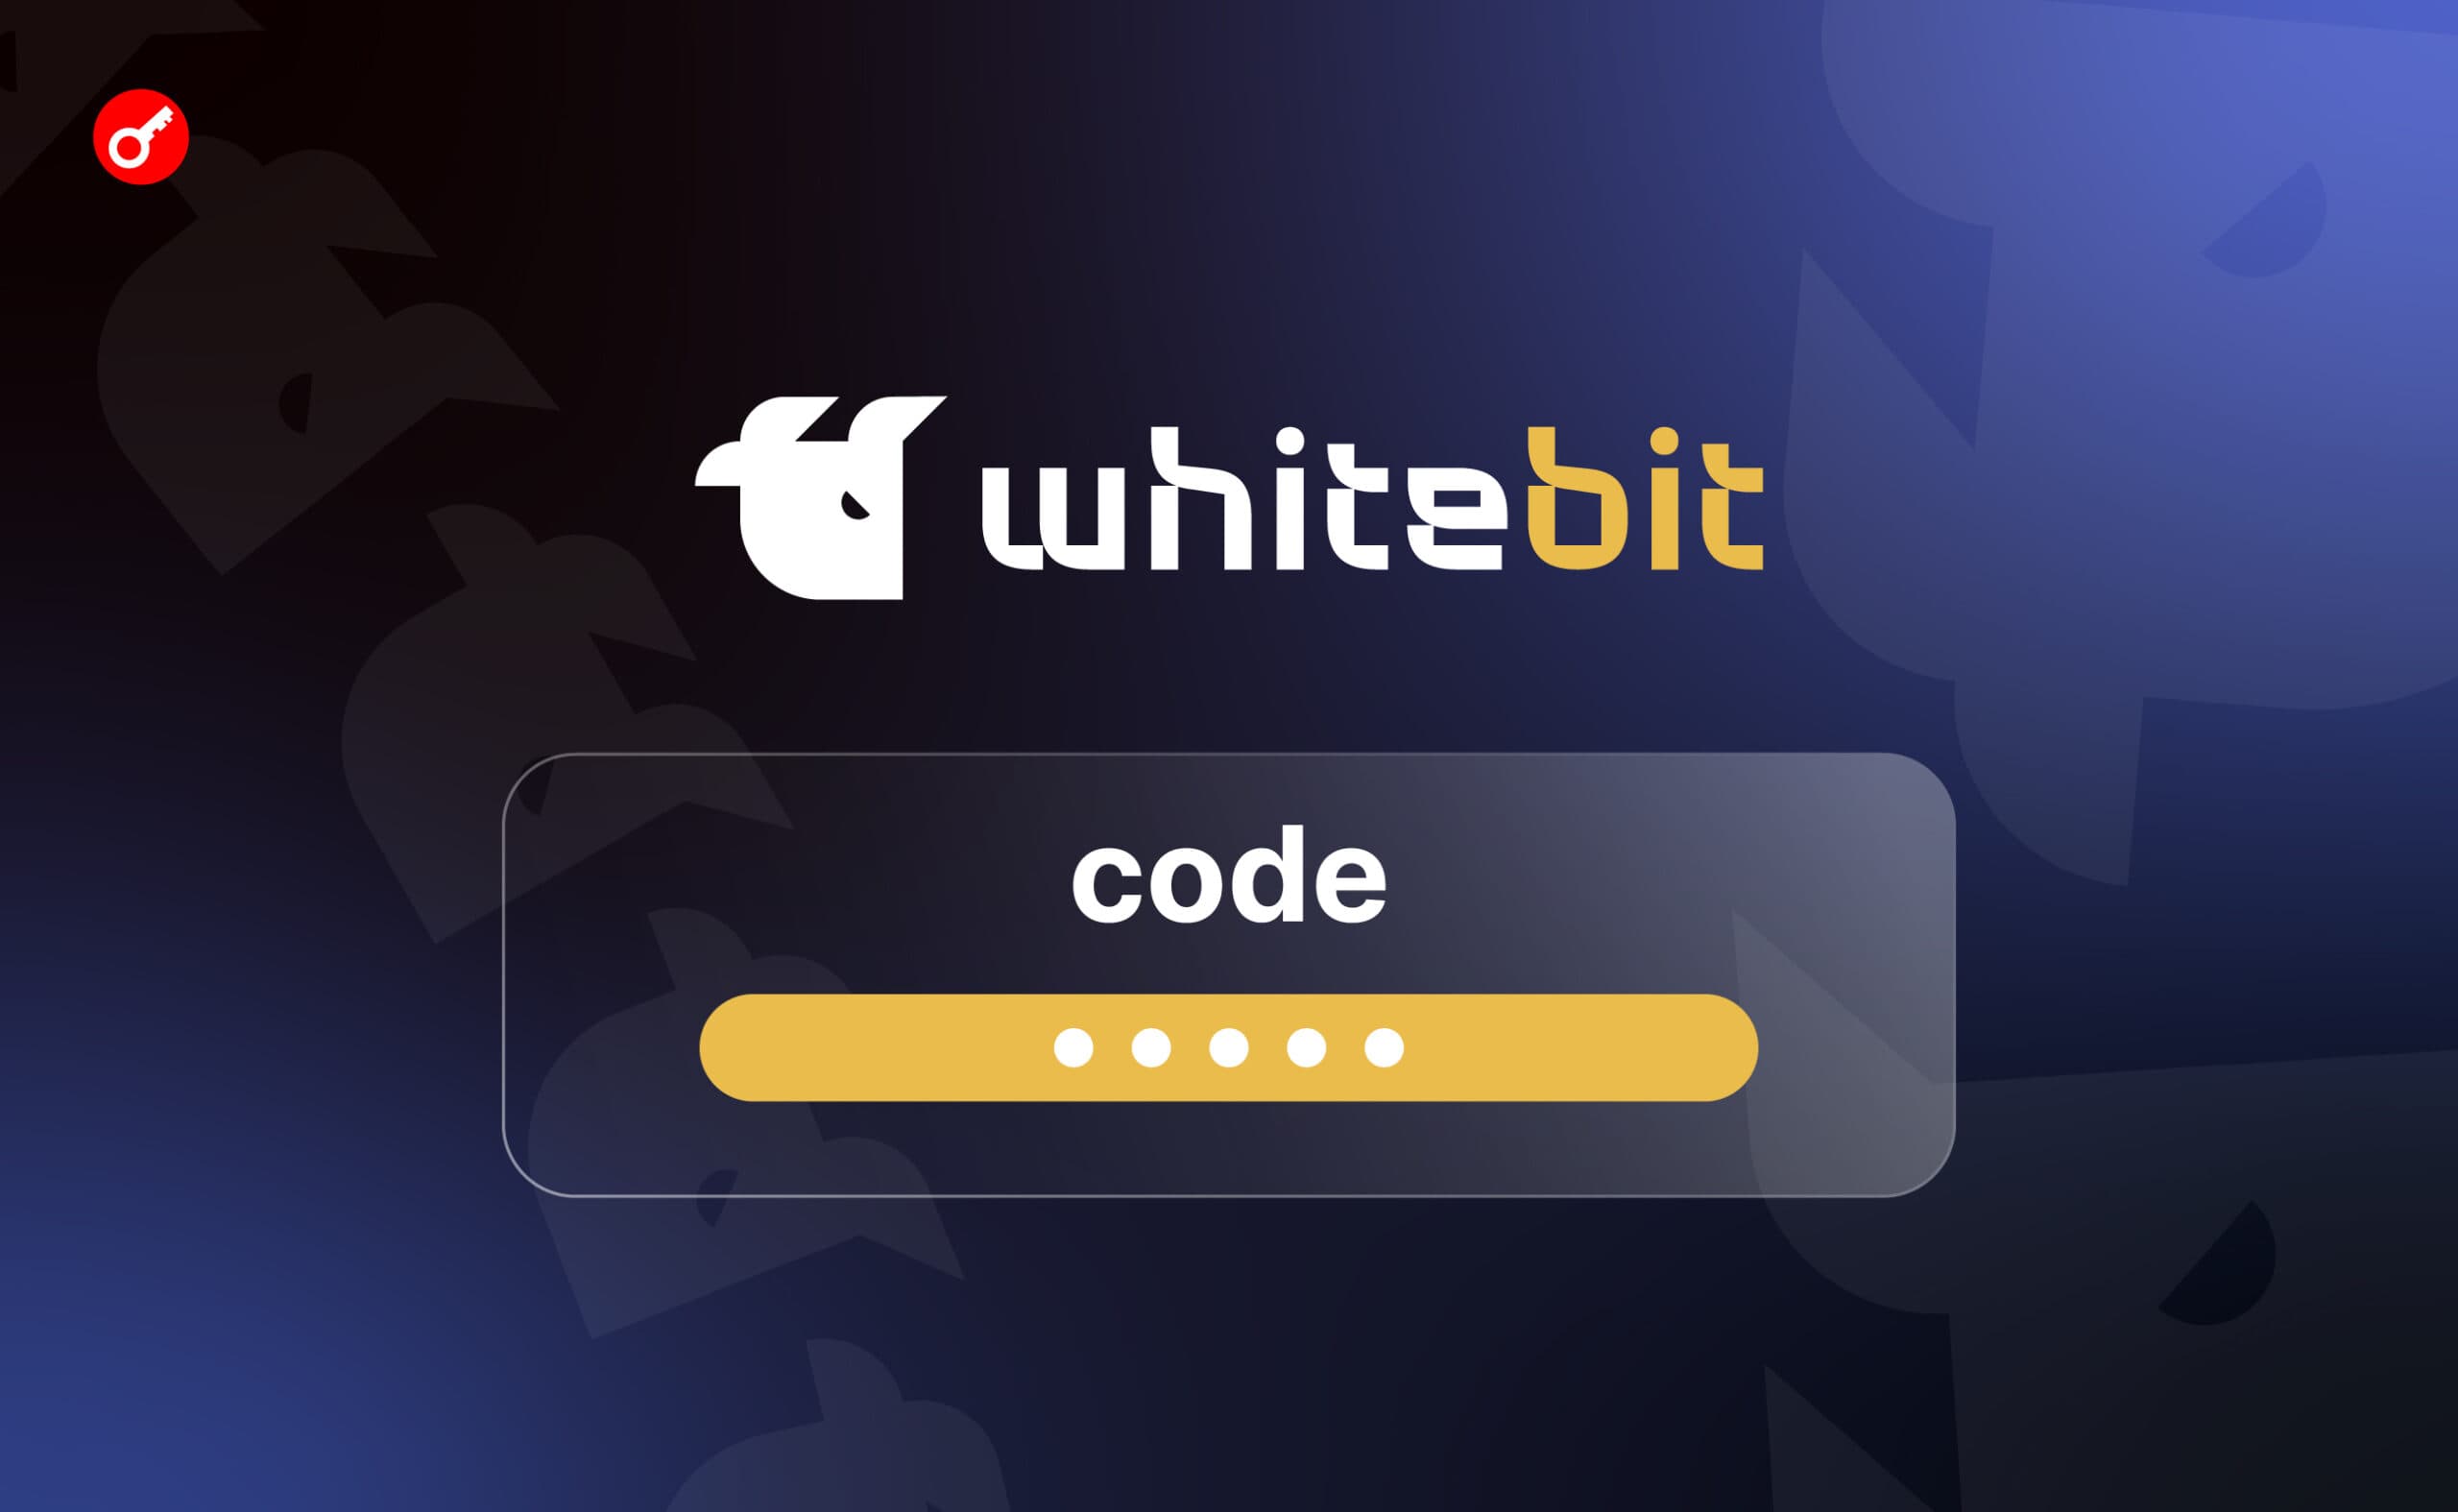 WhiteBIT-код: швидкі та конфіденційні платежі в криптовалюті. Головний колаж статті.